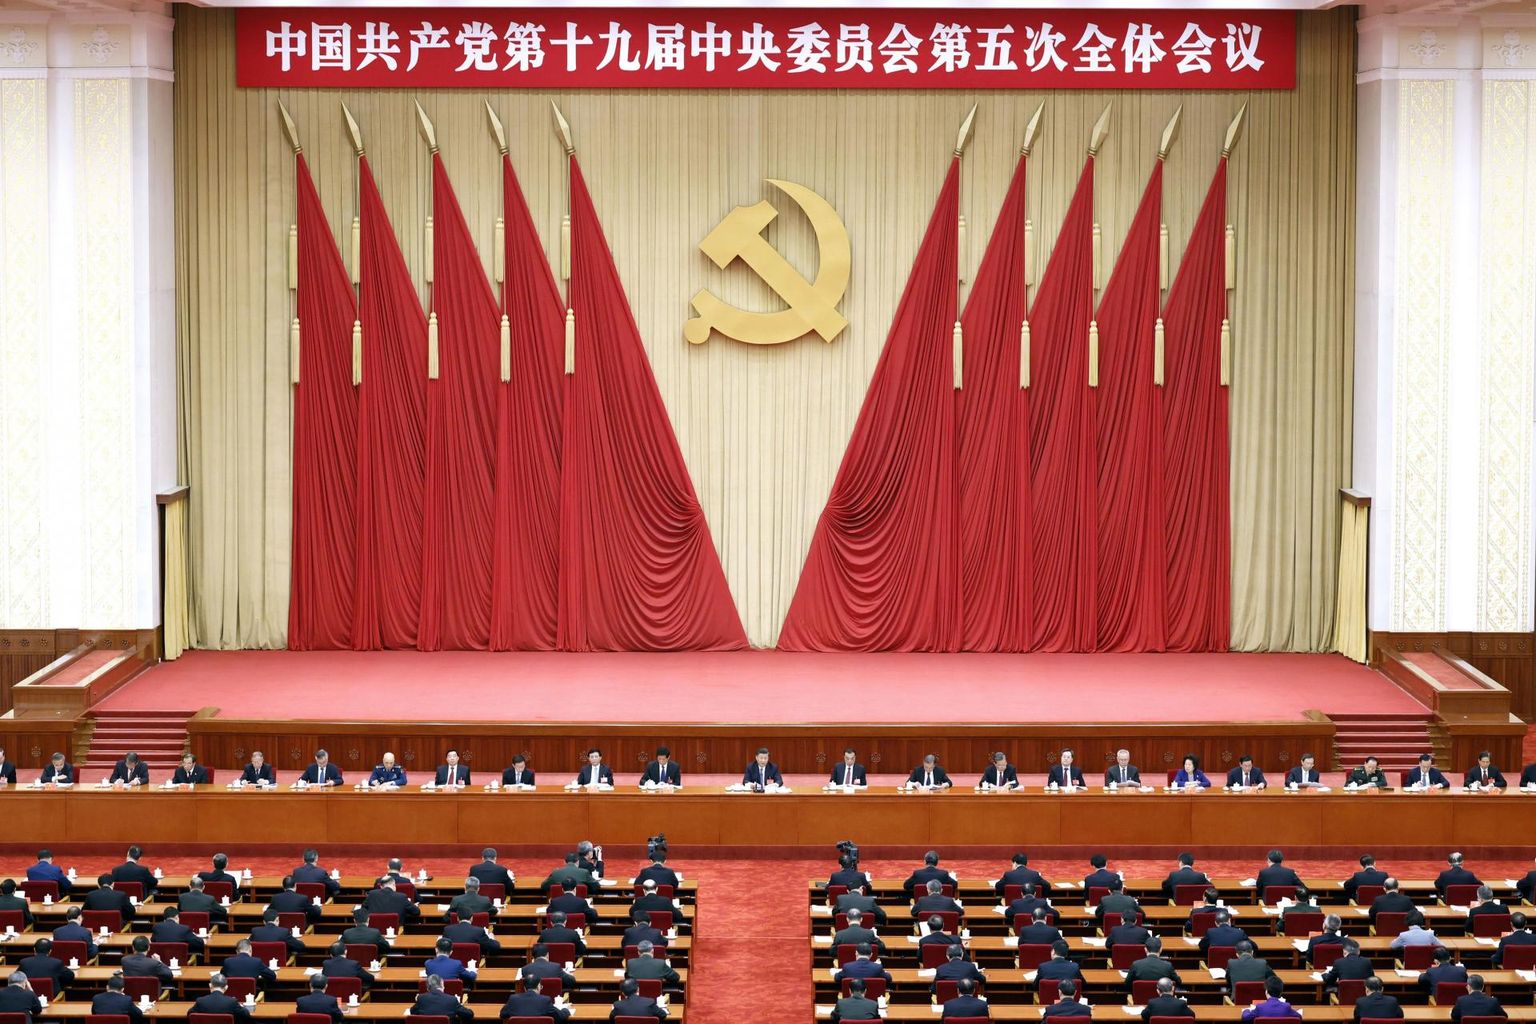 Hiina on jätkuvalt kommunistlik riik, mis toimib kapitalistlike reeglite järgi. Hiina Kommunistliku Partei keskkomitee 2020. aasta oktoobris plenaaristungil.